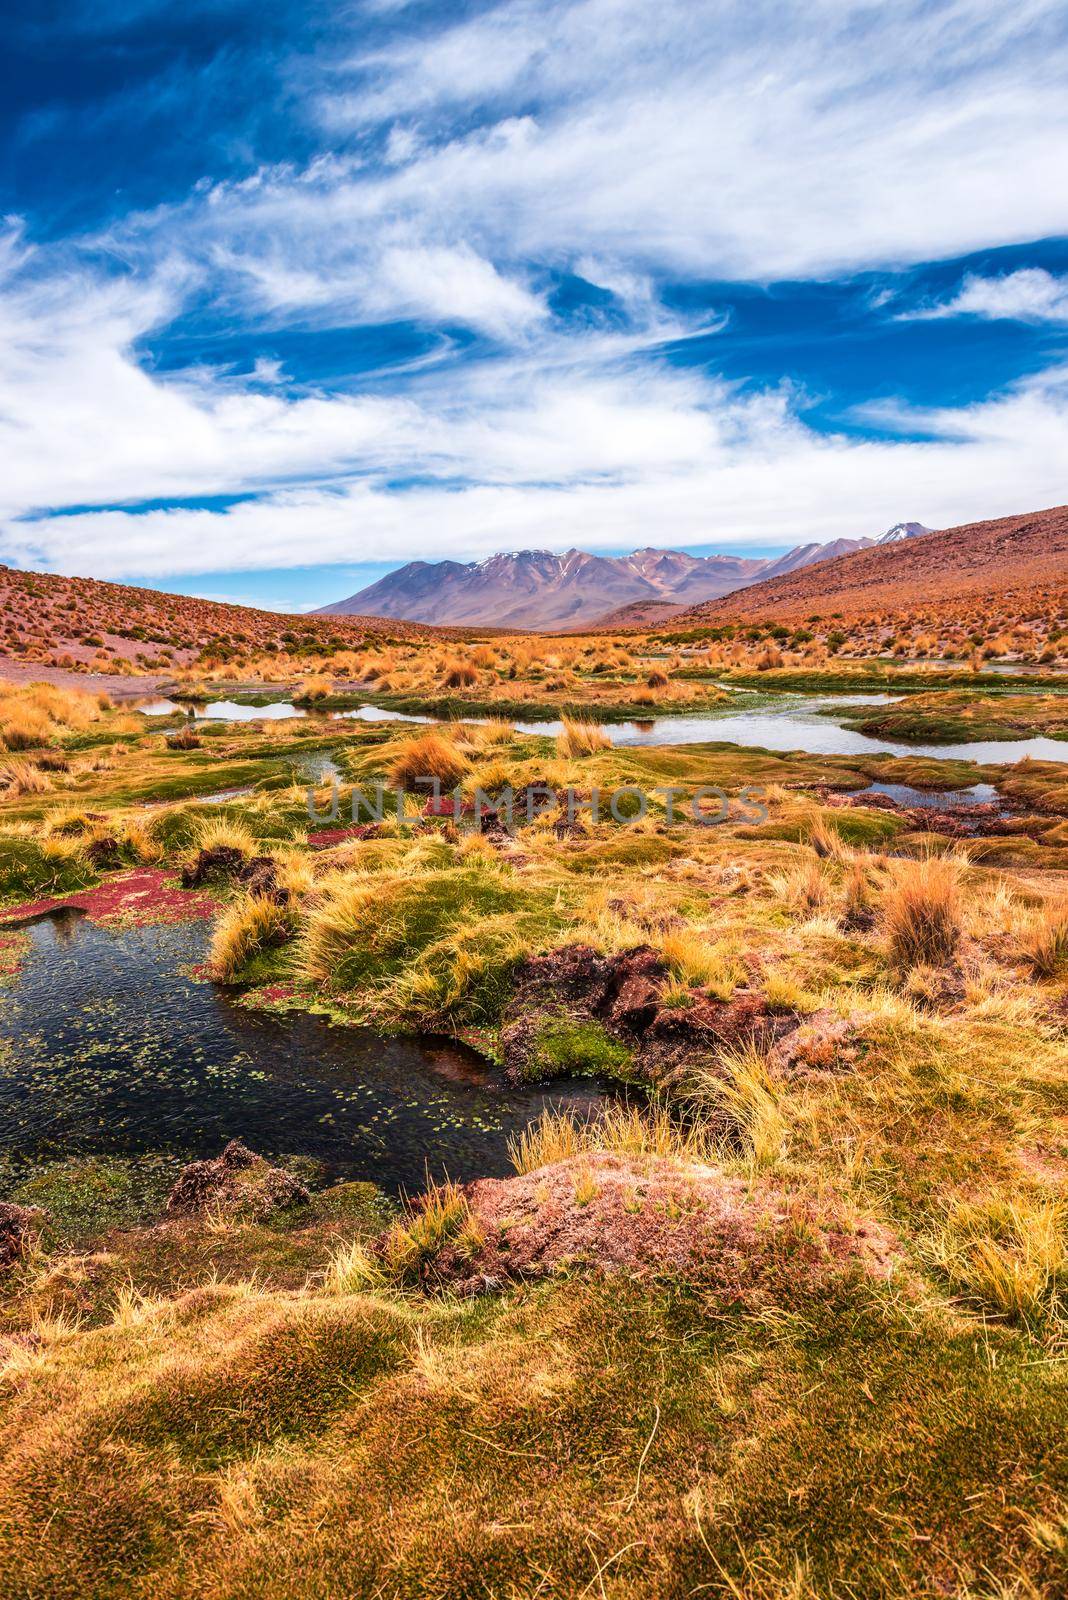 Lagoon landscape in Bolivia by tan4ikk1